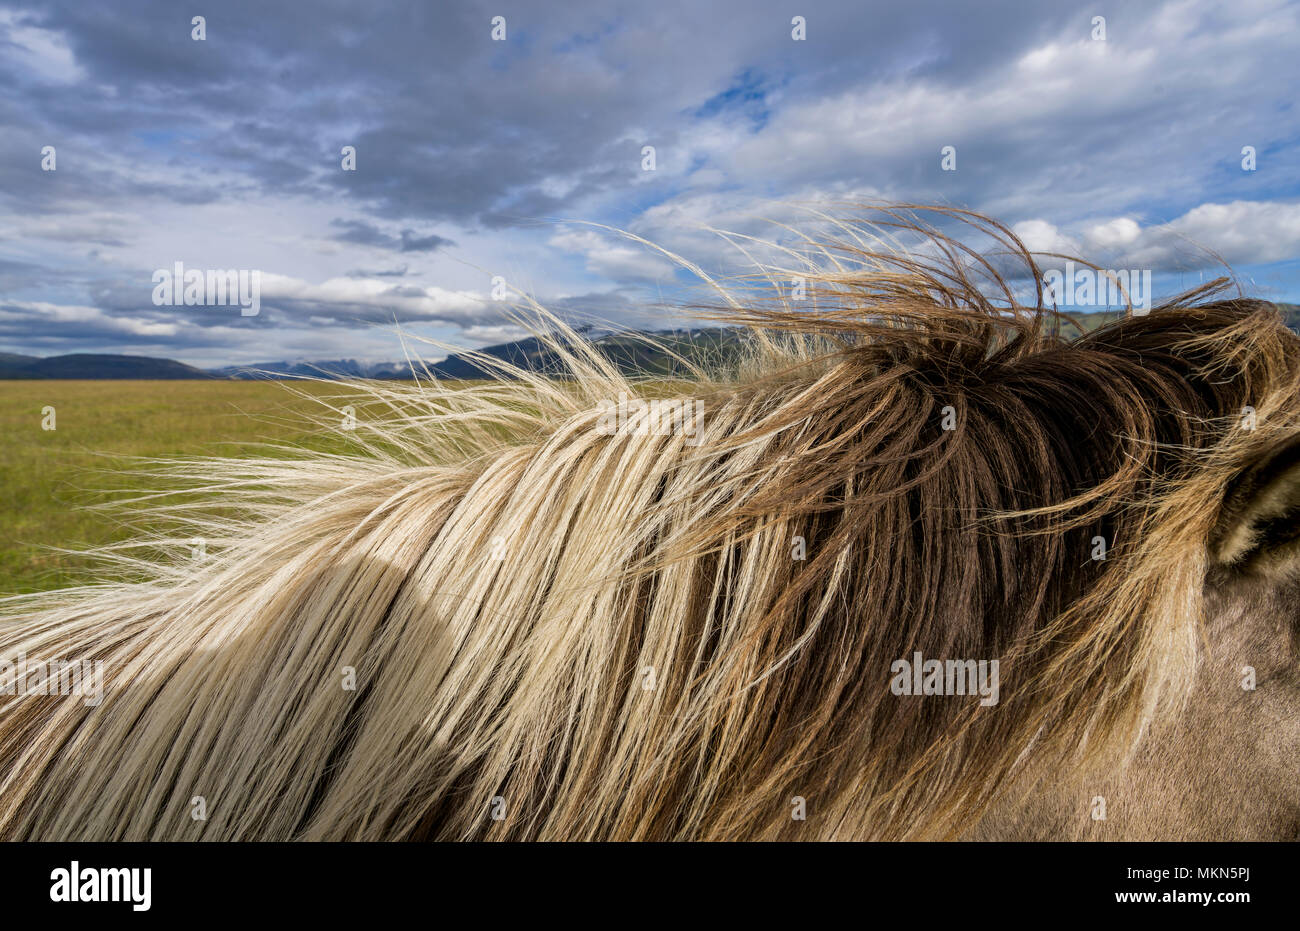 Mane of Icelandic Horse, Iceland Stock Photo